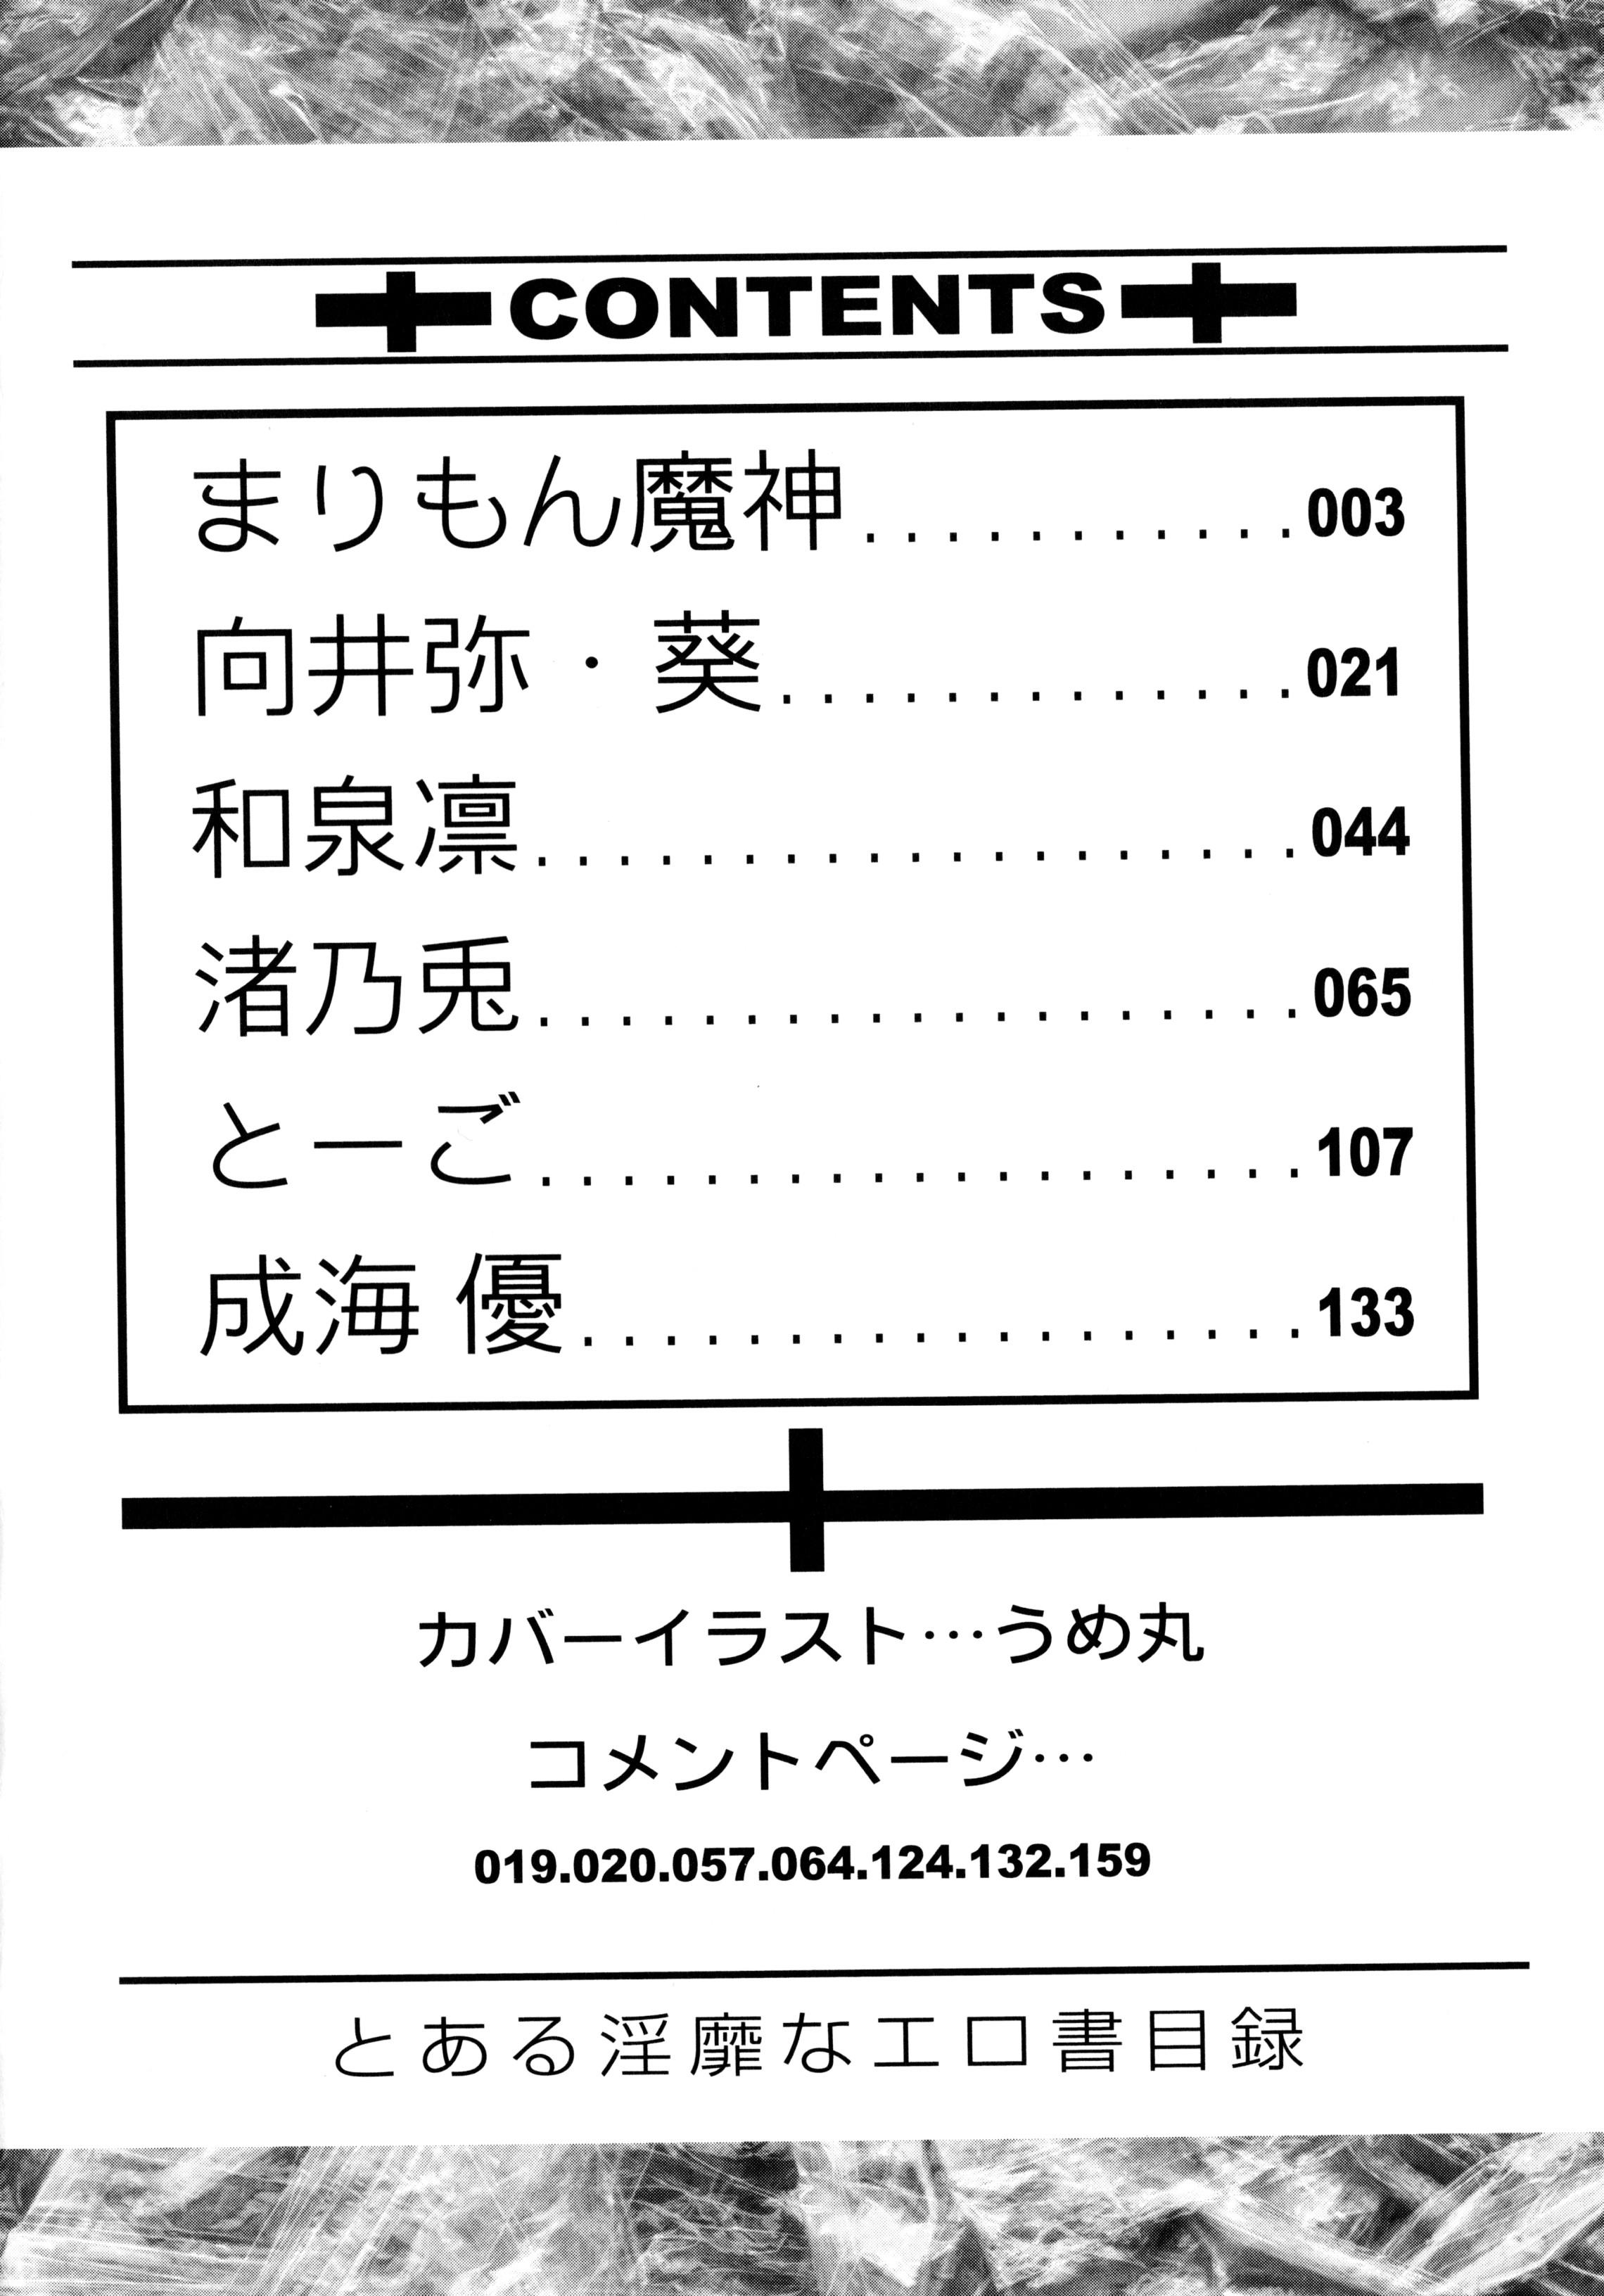 Aussie Toaru Inbi na Erosho Mokuroku - Toaru kagaku no railgun Toaru majutsu no index Massages - Page 4